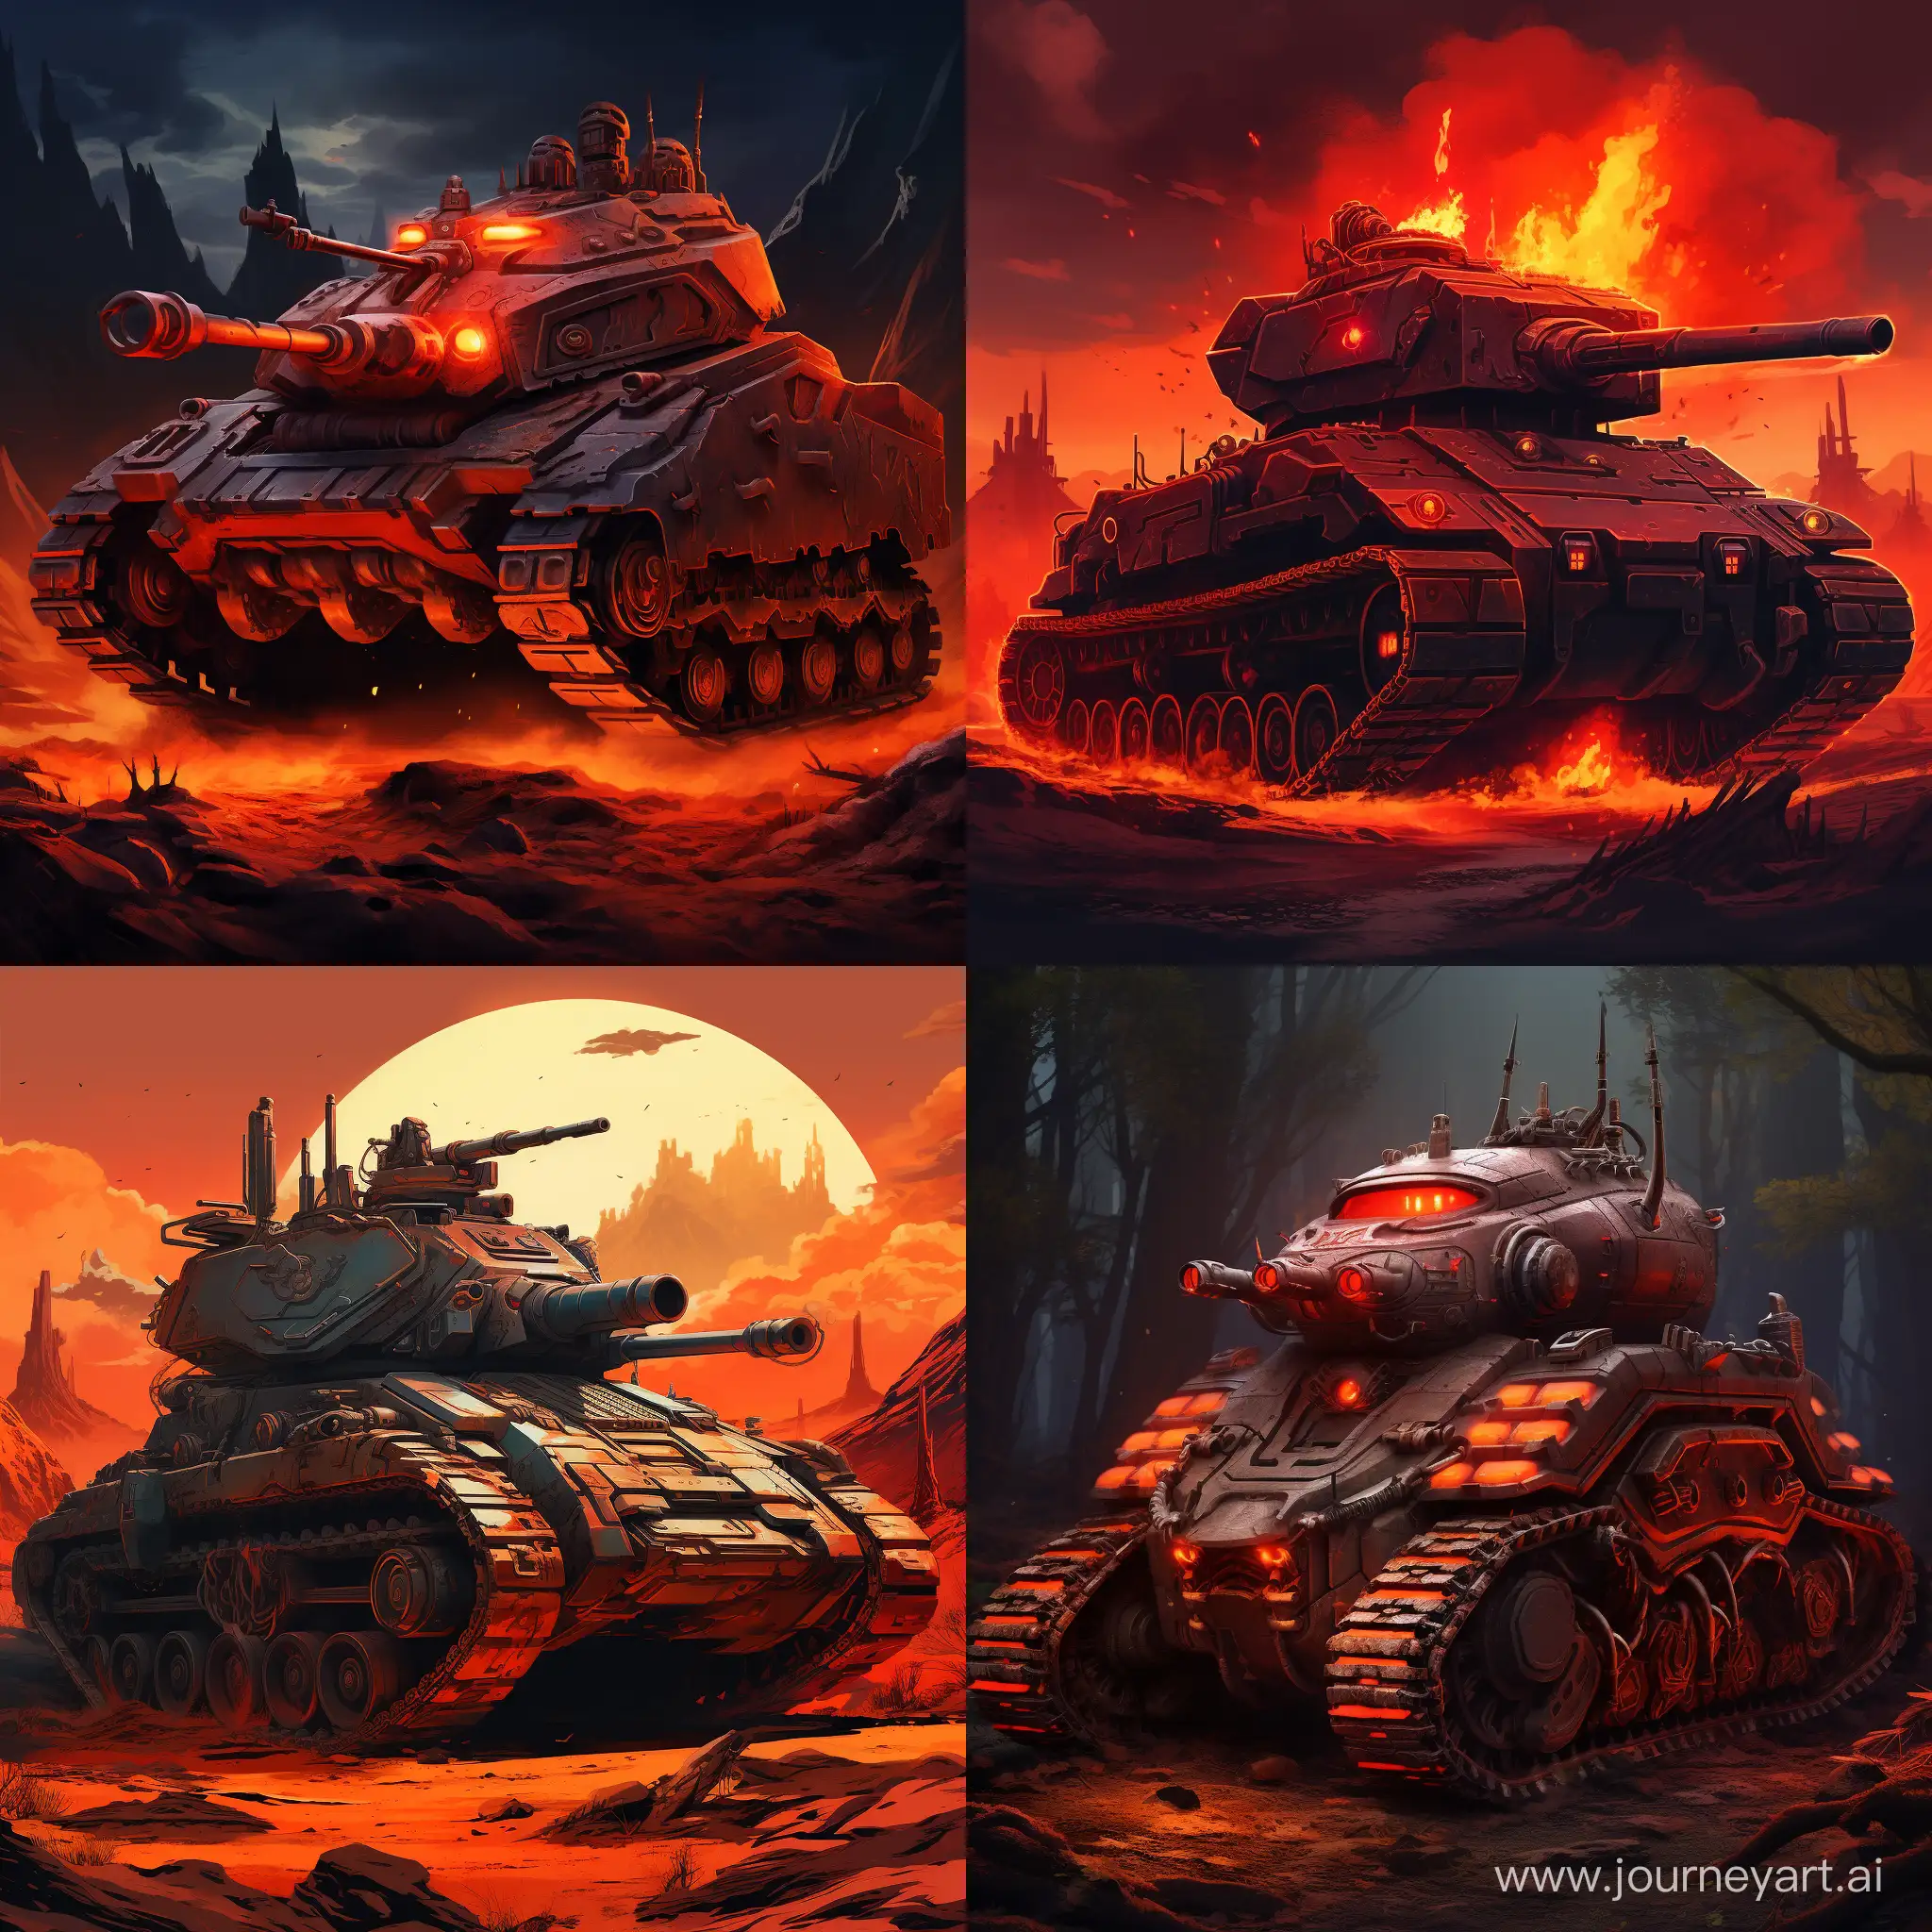 Хочу увидеть бронированного танка из магмы в стиле ретро